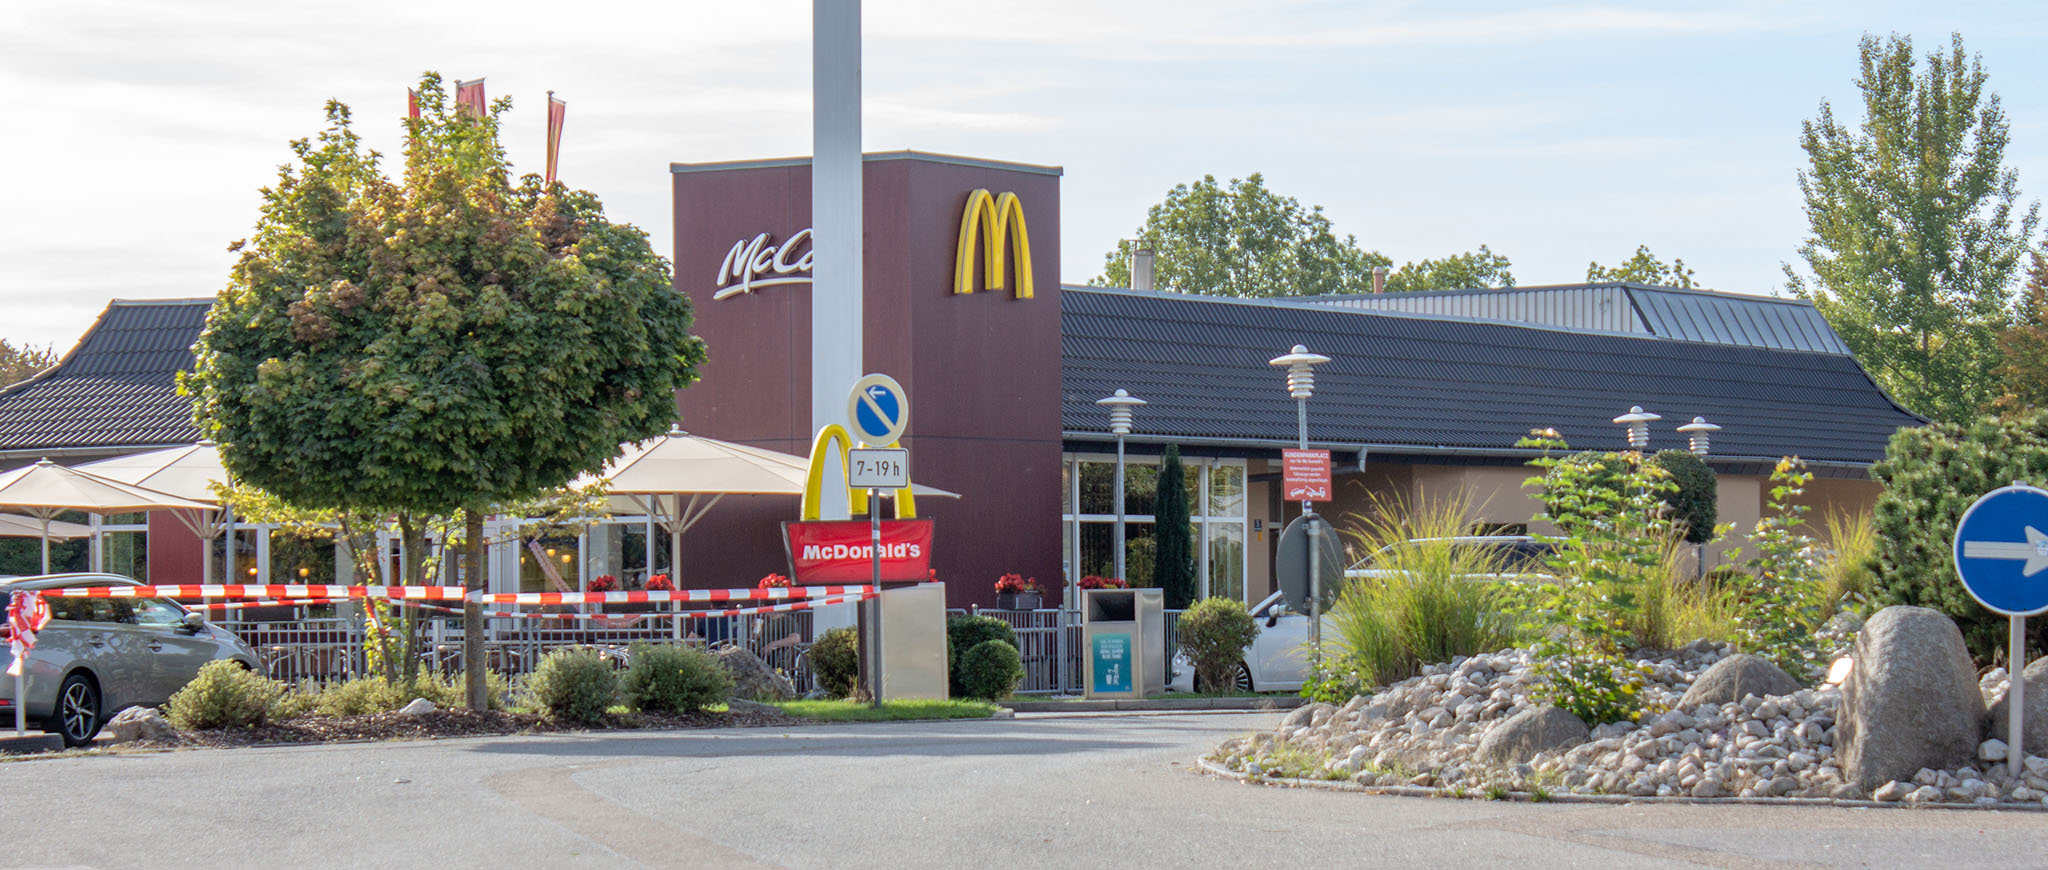 Das McDonald’s-Restaurant in Obertraubling